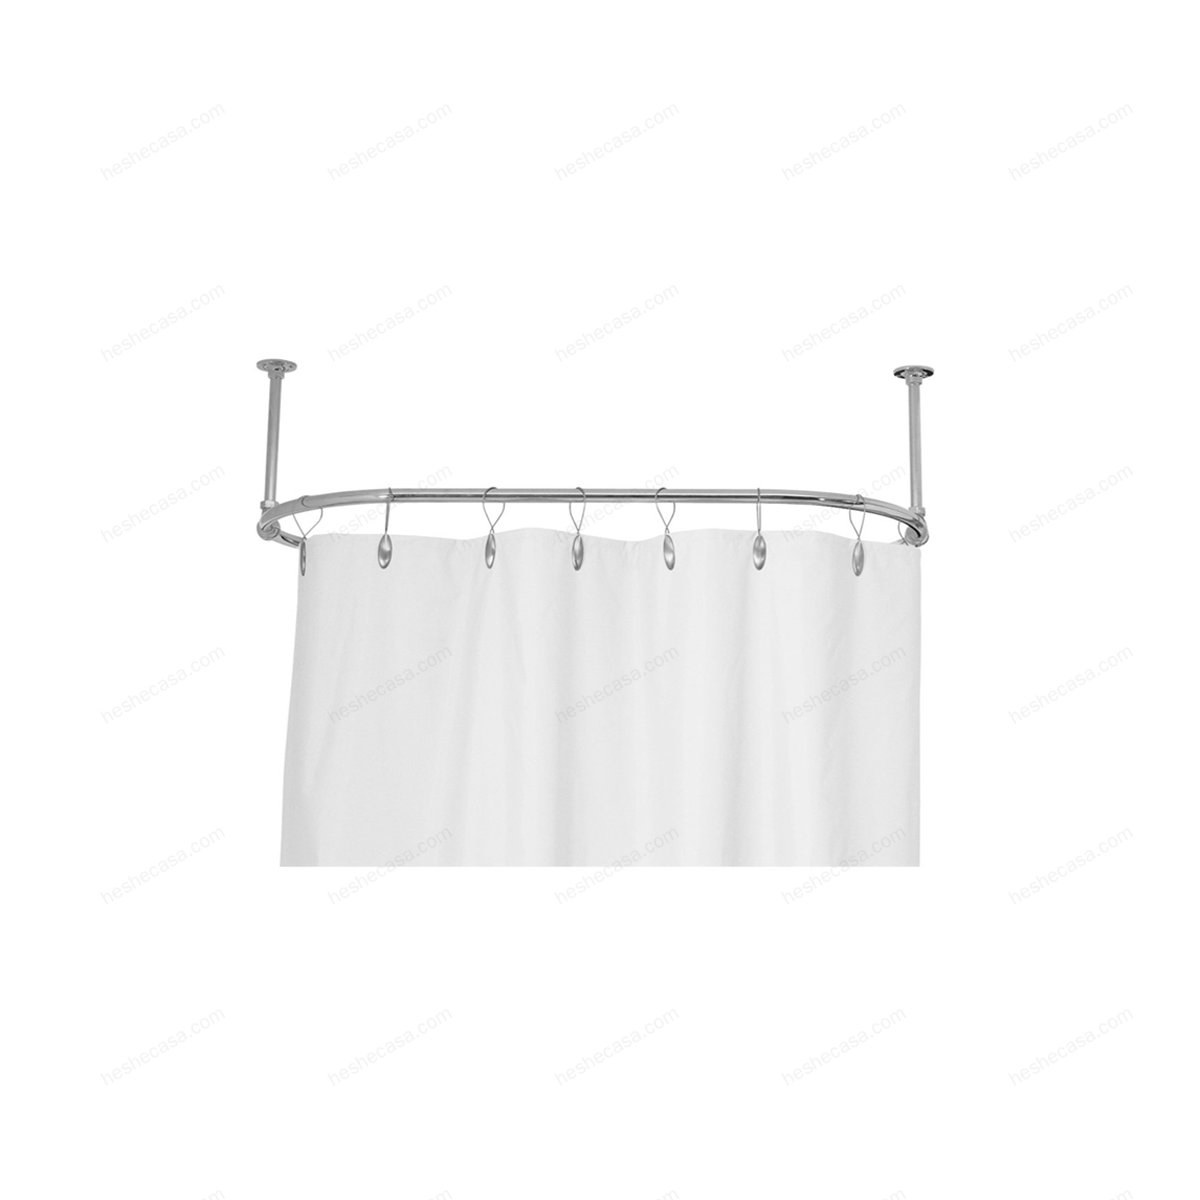 Shower Curtain Rod 浴帘架